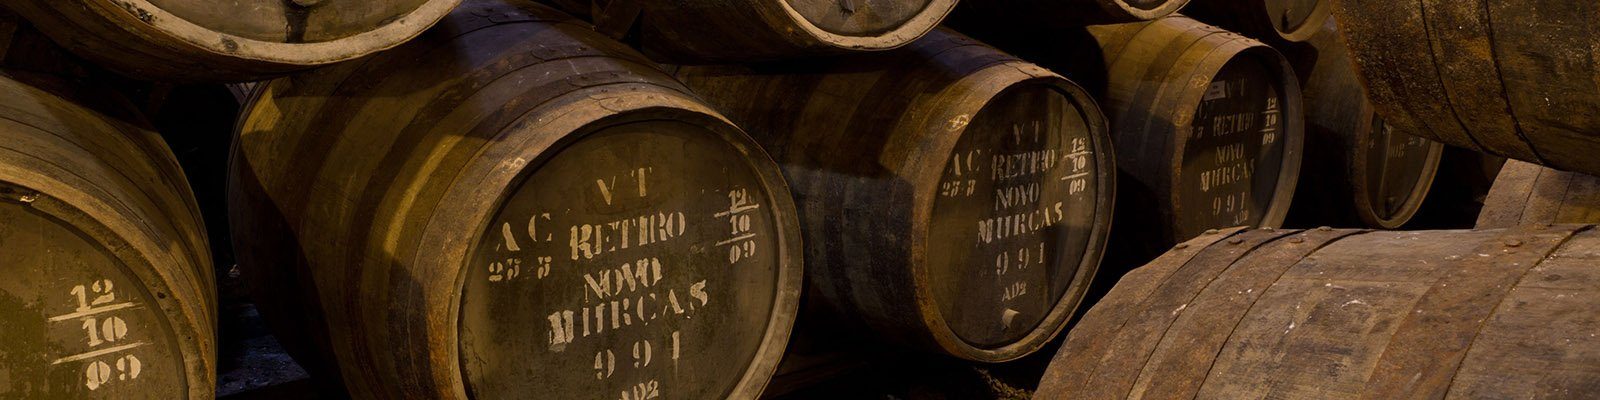 Onze collectie van Portugal - Vind deze bij Onshore Cellars uw jacht wijn leverancier